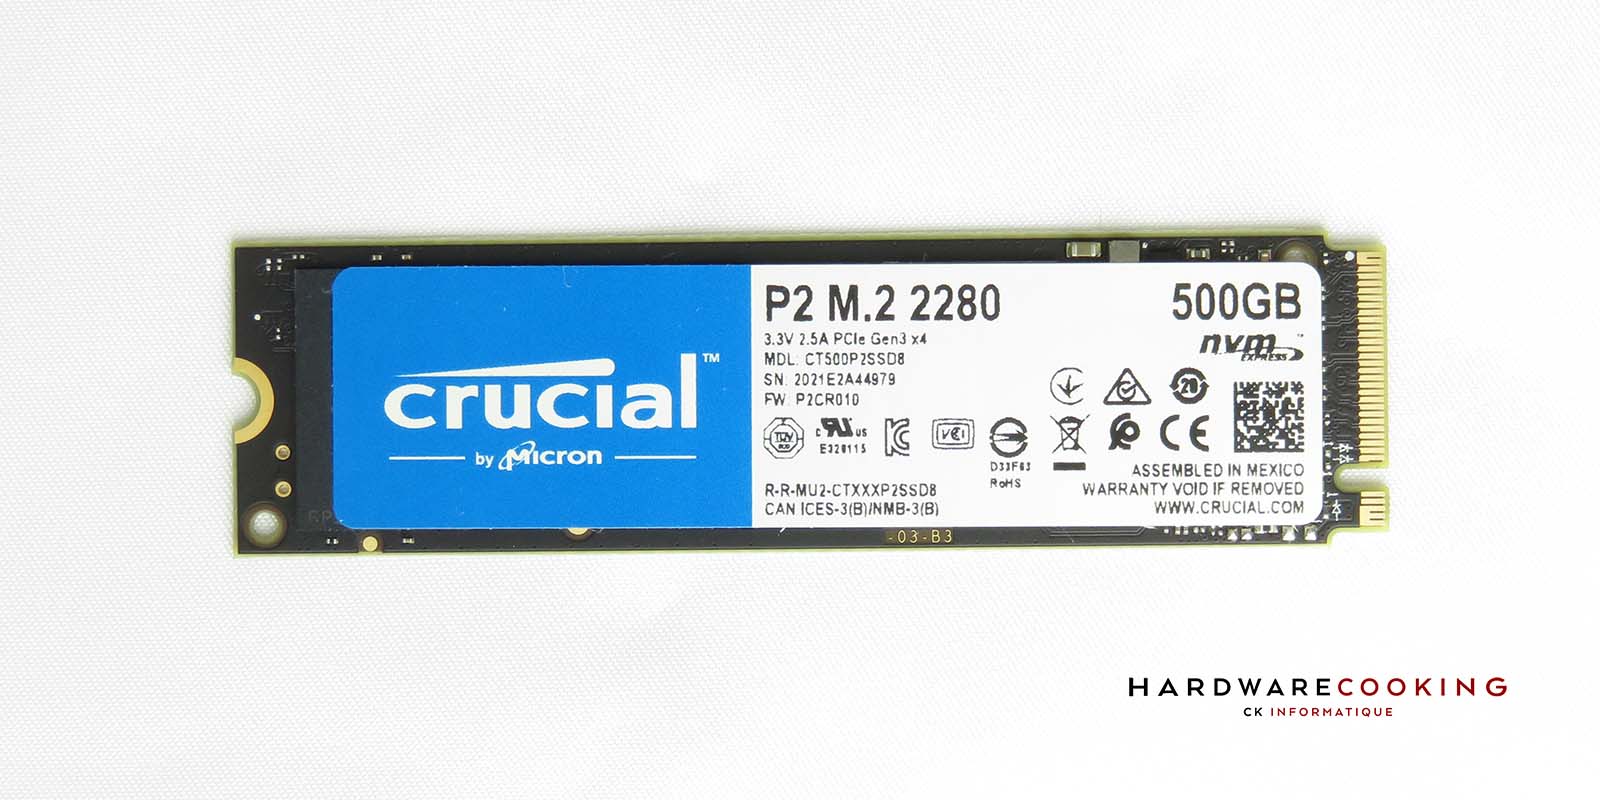 Crucial Disque dur SSD interne 250Go P2 NVME 3D NAND PCIe M.2 pas